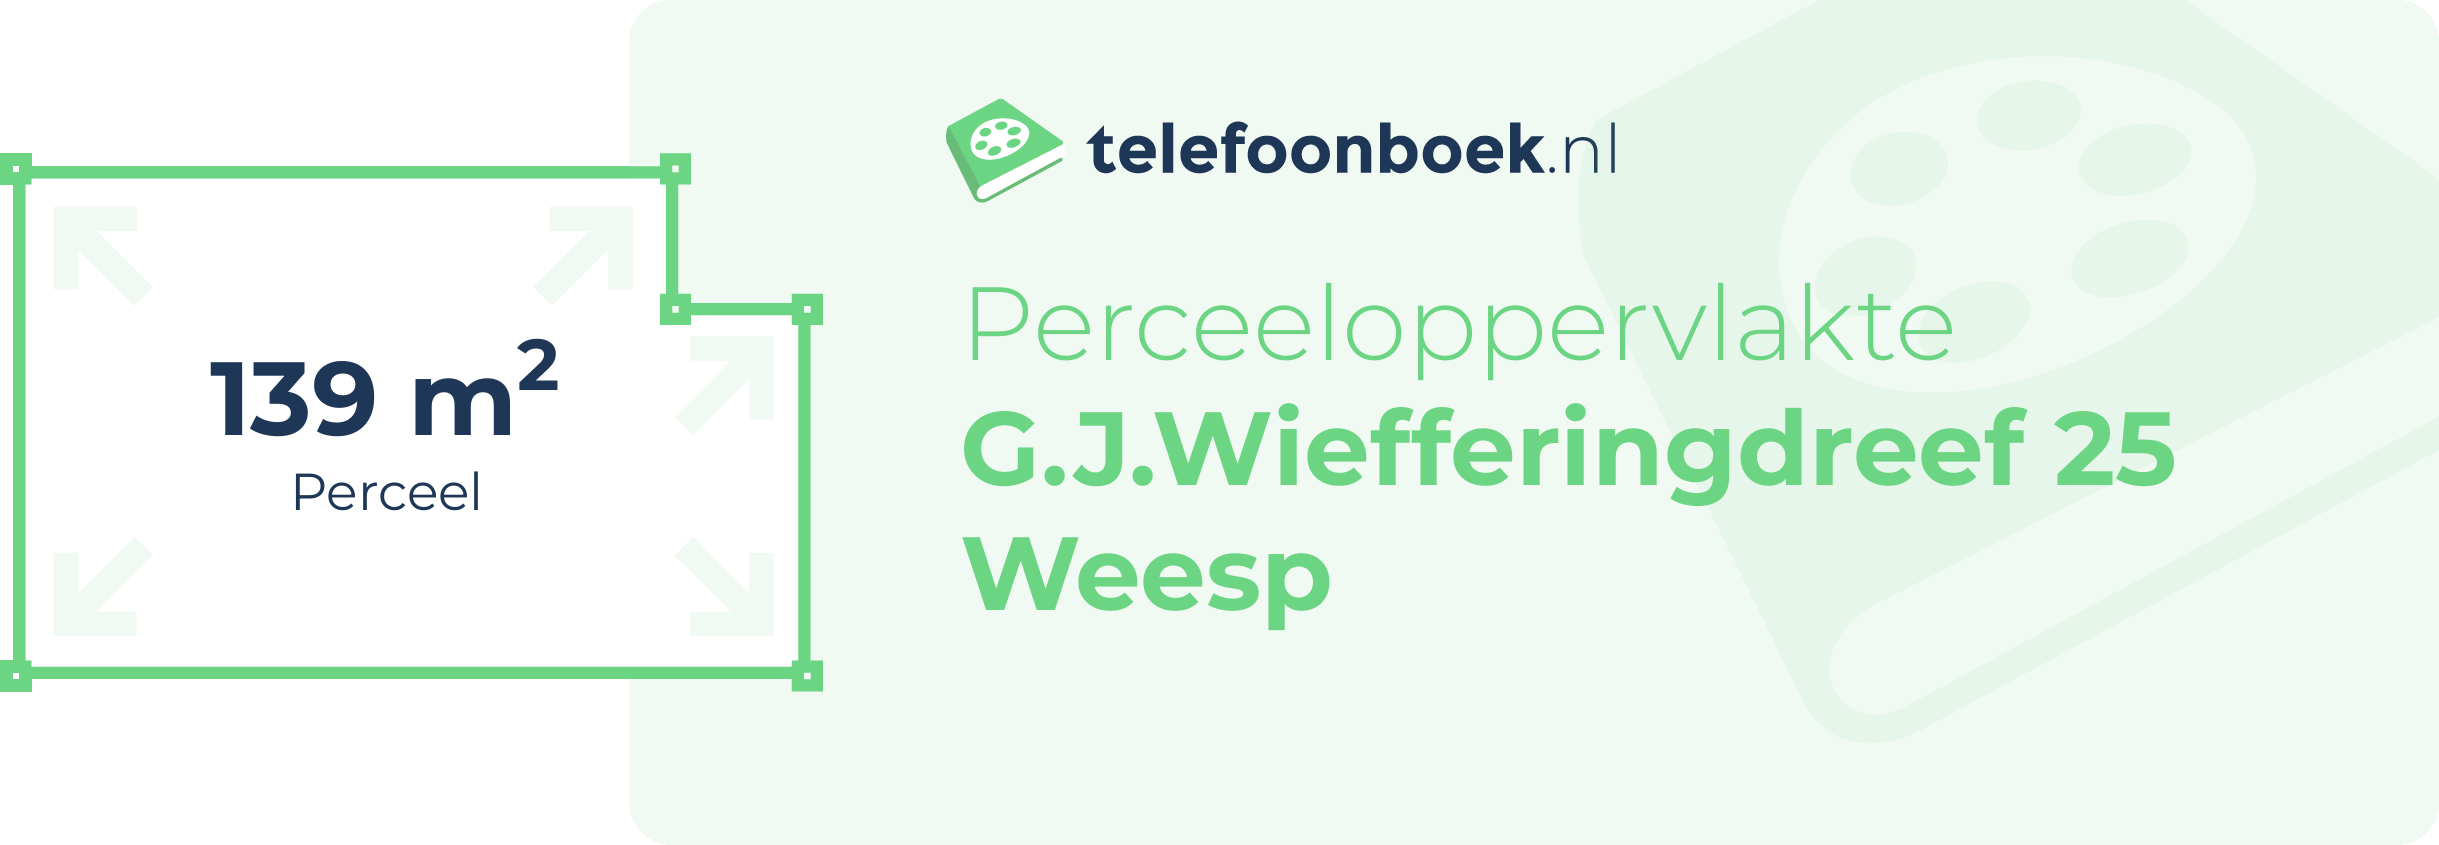 Perceeloppervlakte G.J.Wiefferingdreef 25 Weesp